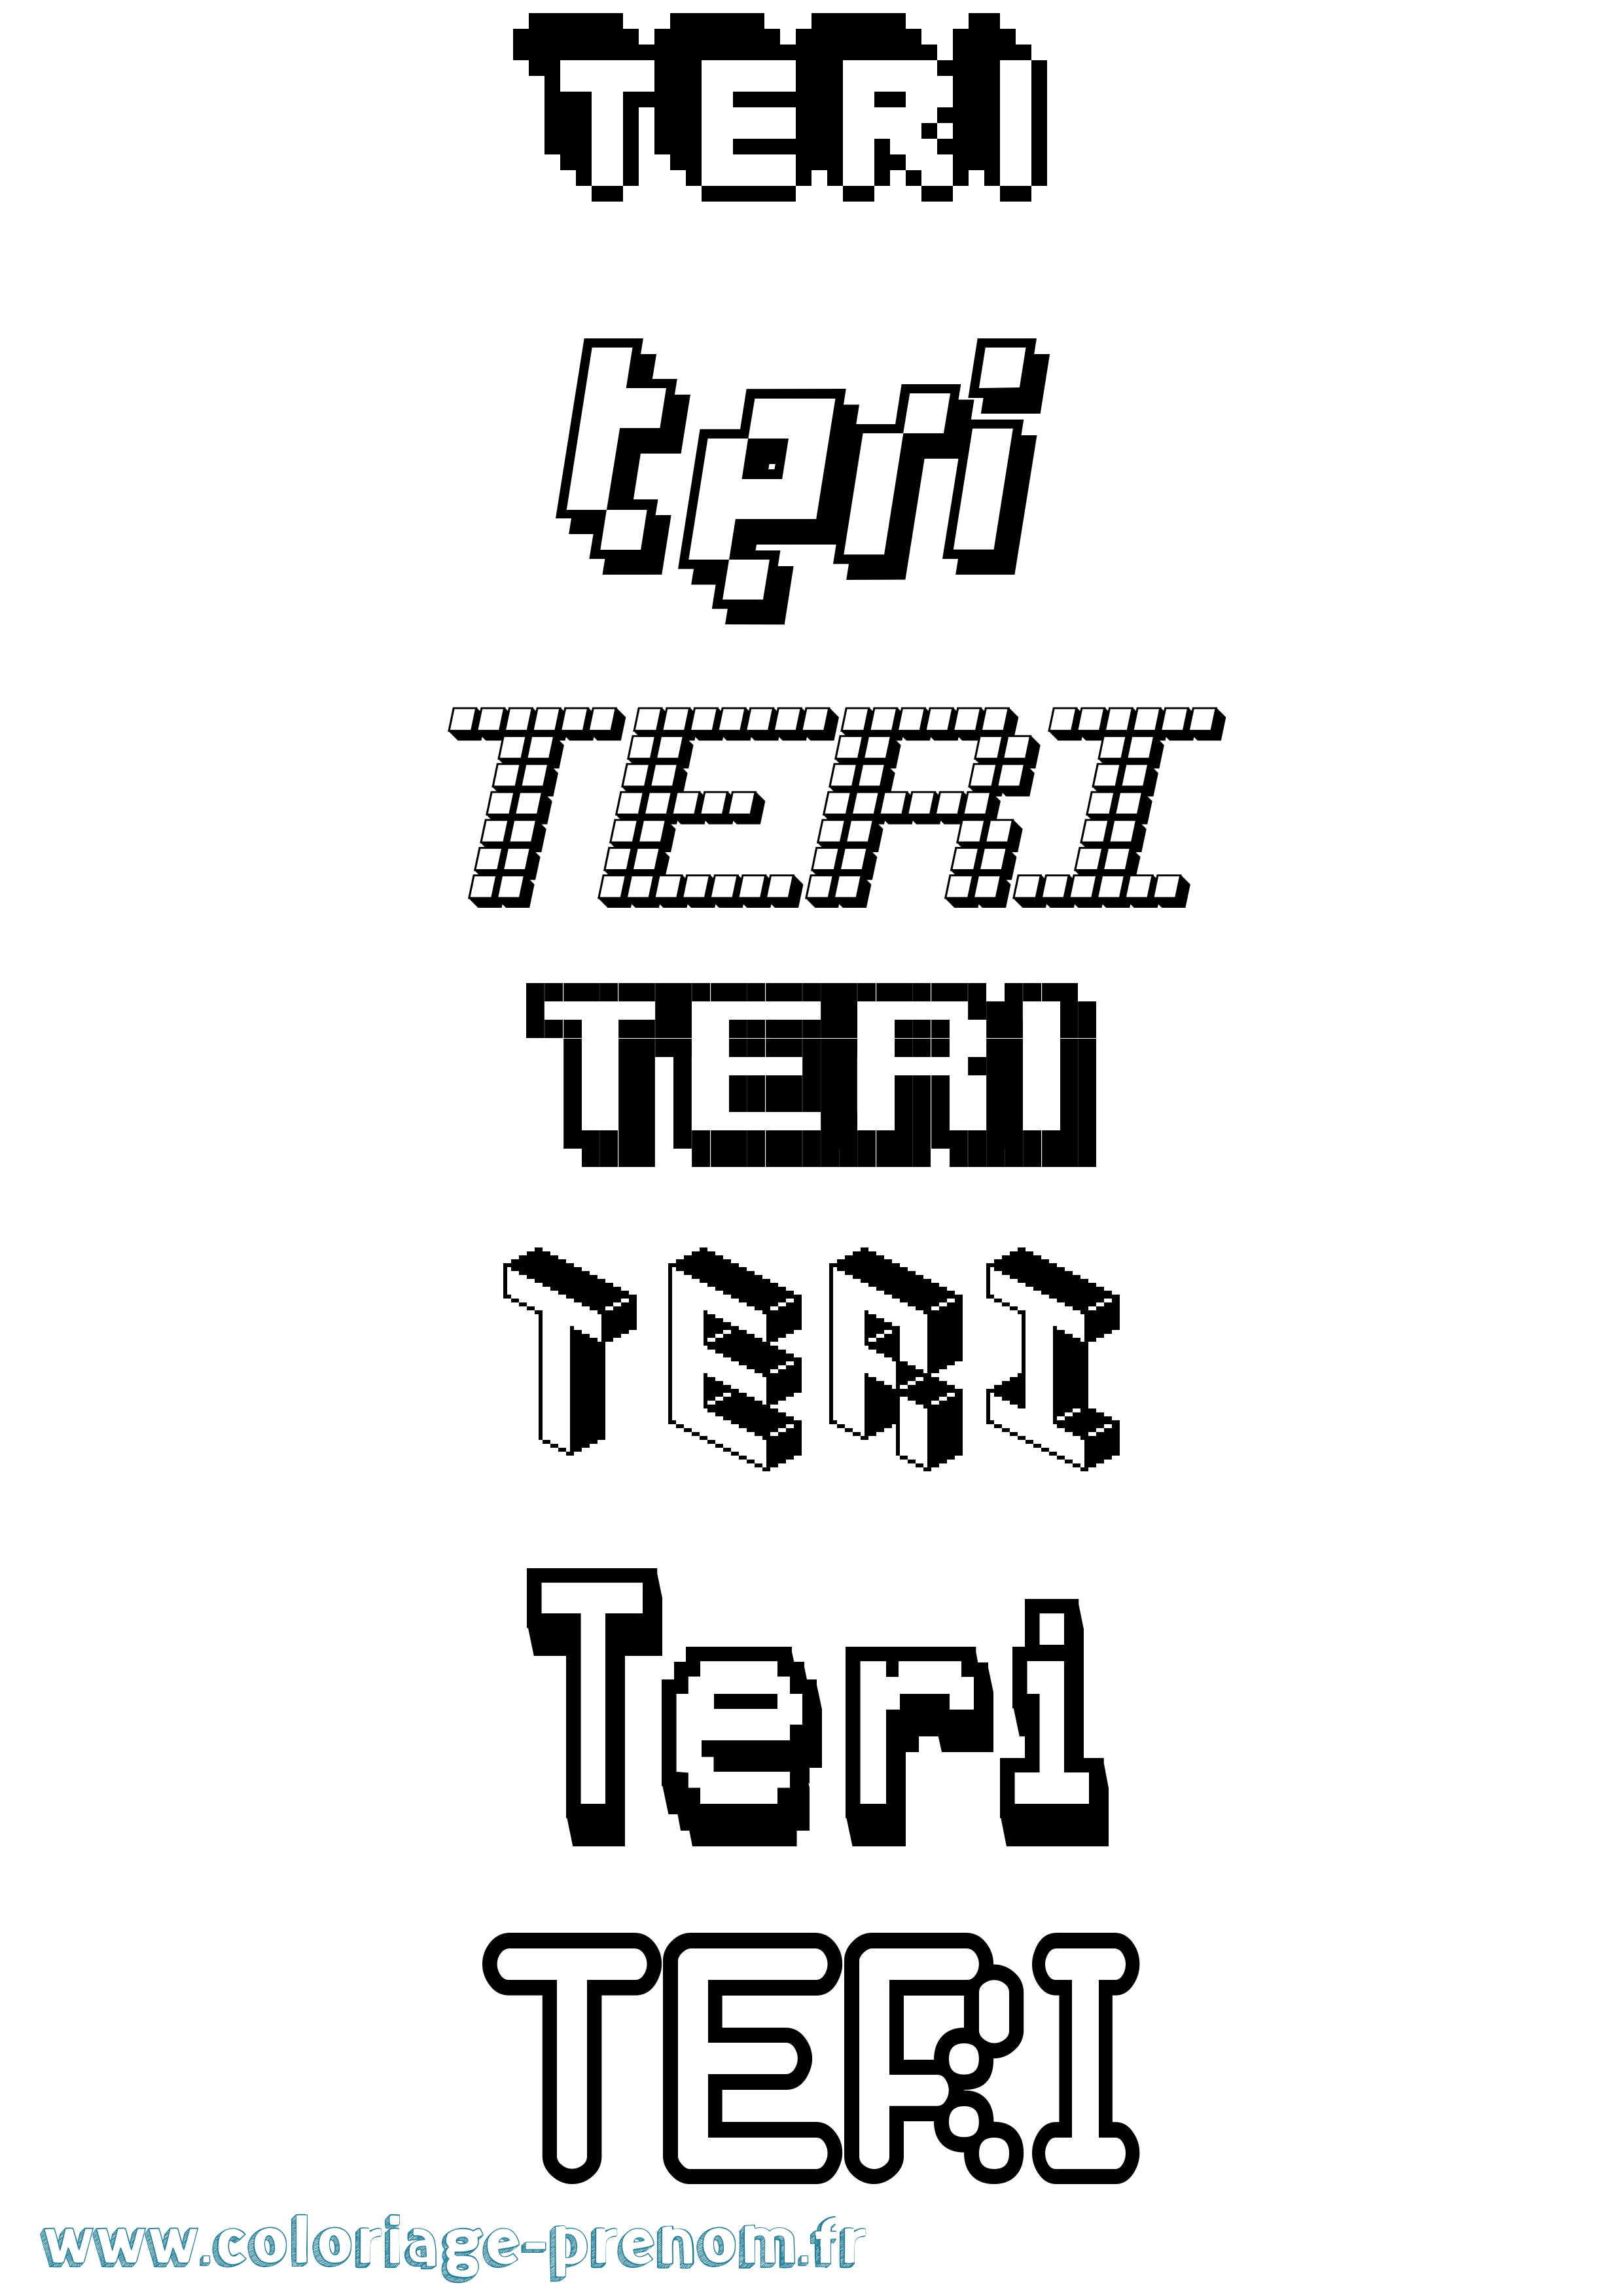 Coloriage prénom Teri Pixel